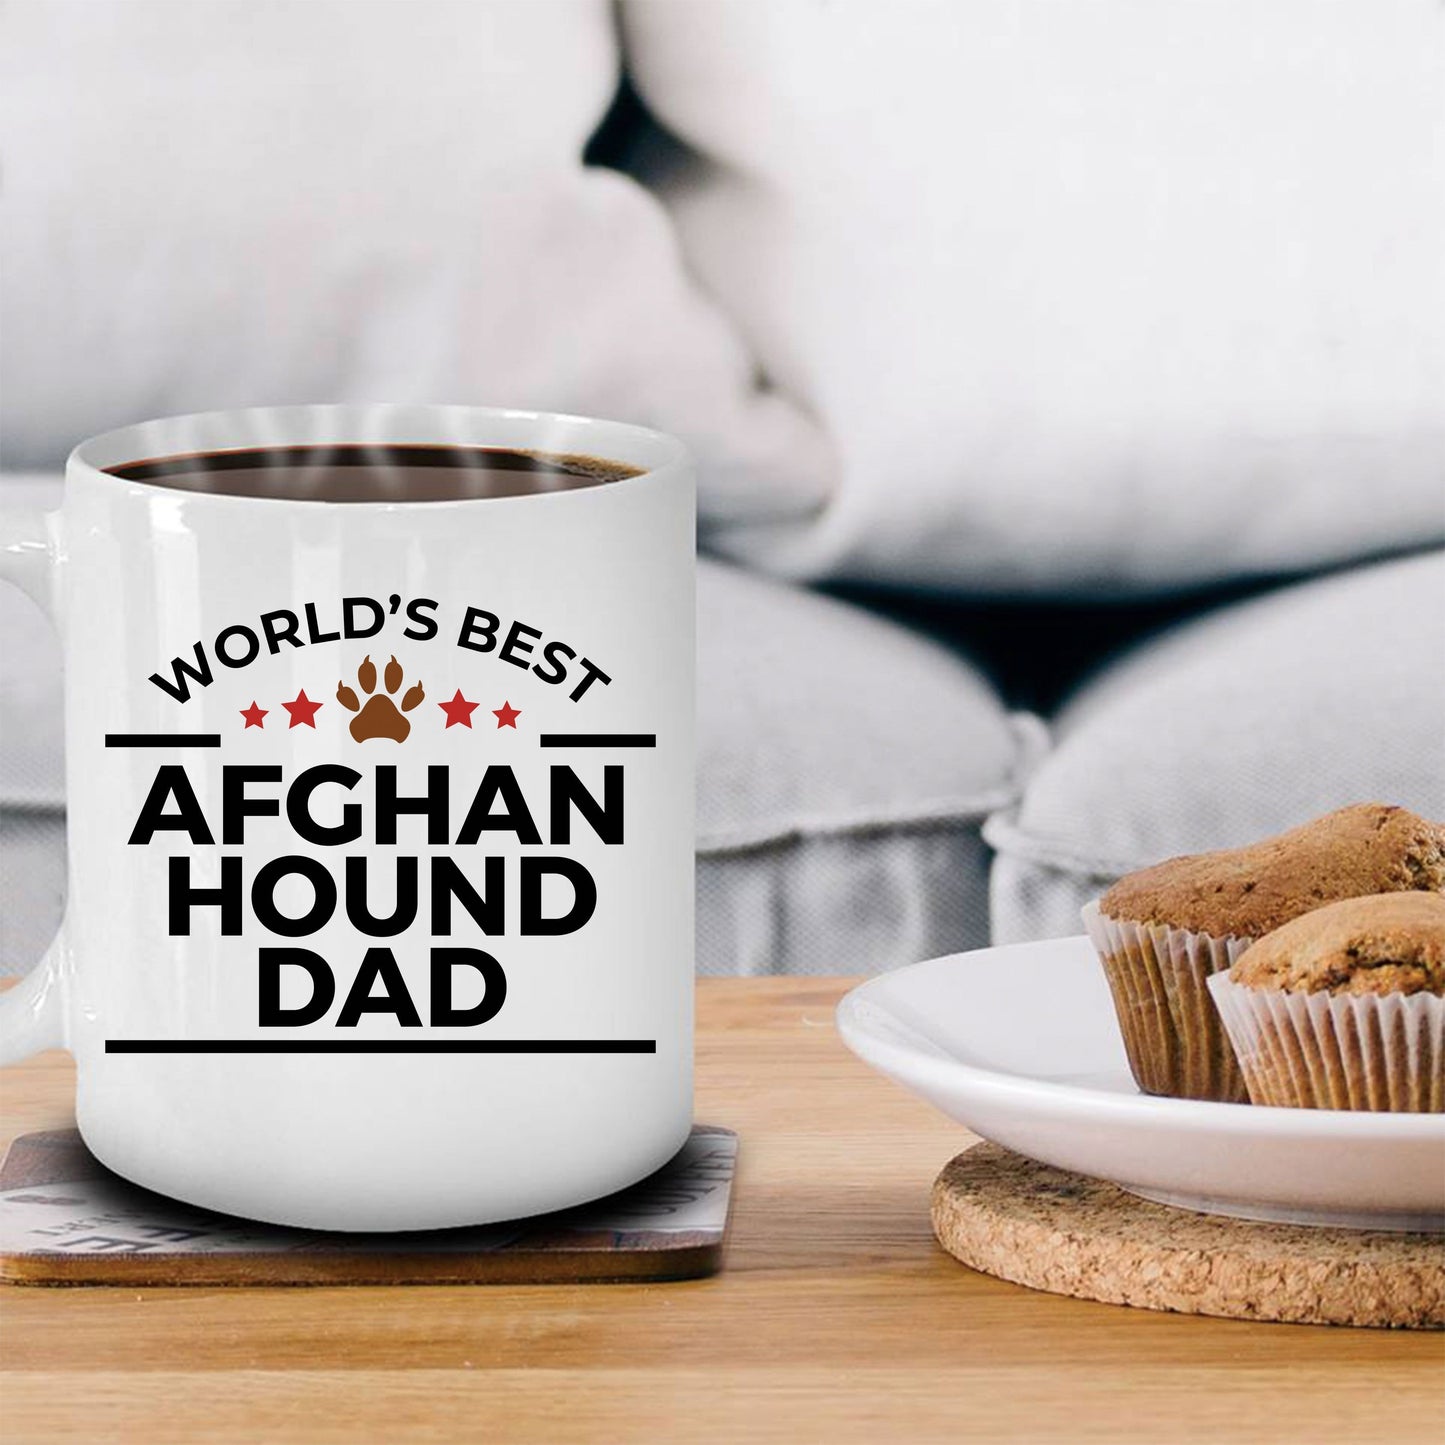 Afghan Hound Dog Dad Ceramic Coffee Mug